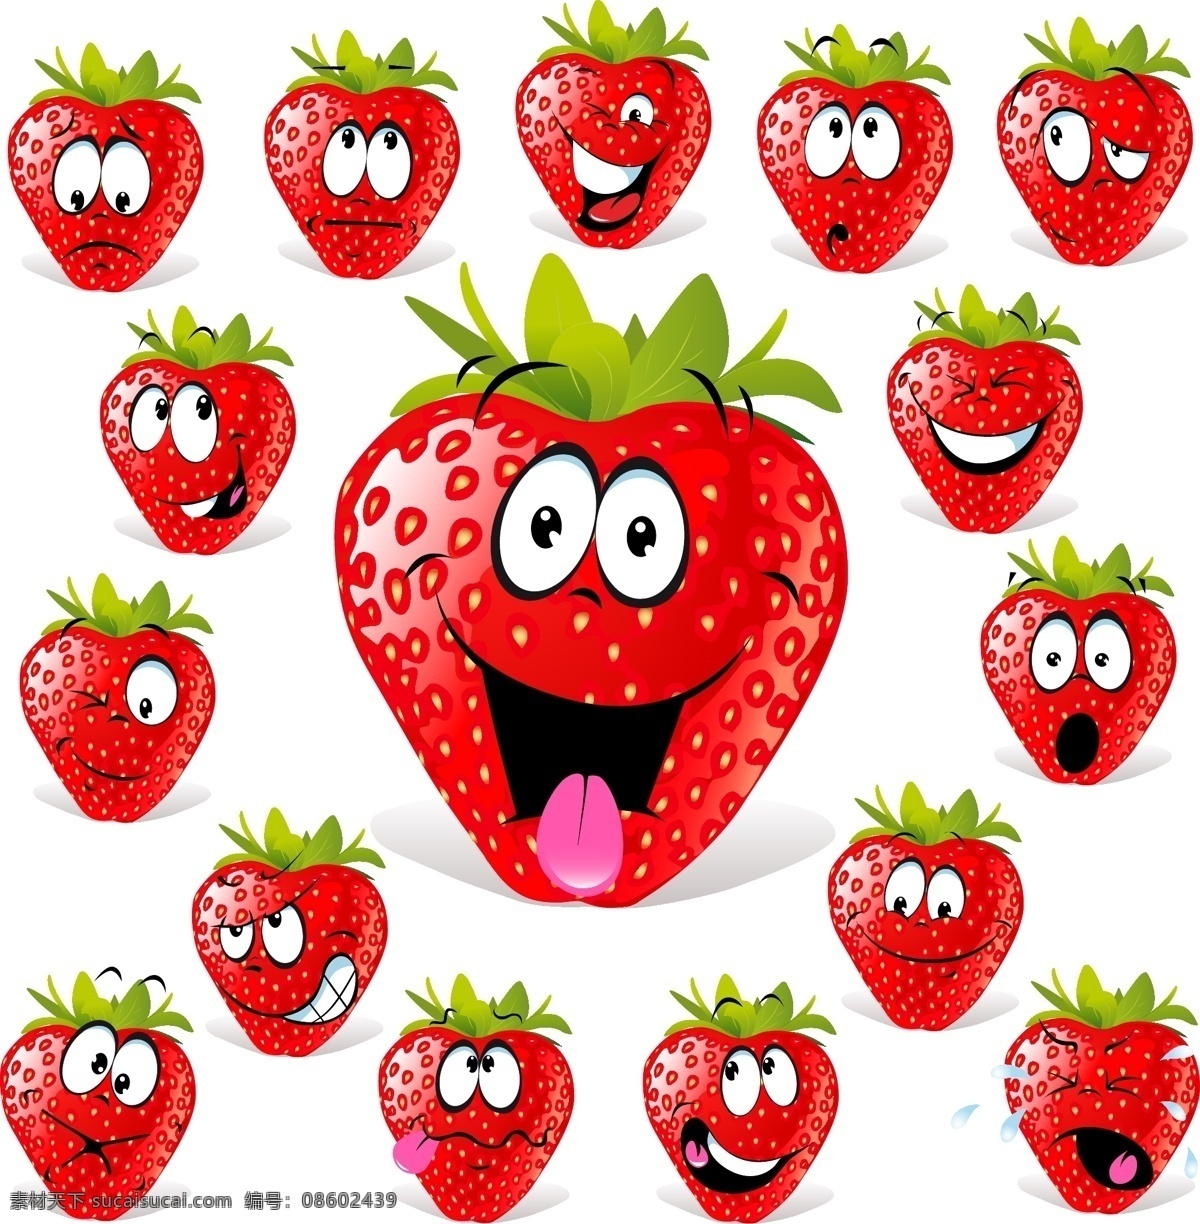 草莓水果表情 草莓 水果 表情 喜弄哀乐 高兴 可爱 愉快 夸张 闭嘴 美食 新鲜 惊讶 表情控 动漫动画 动漫人物